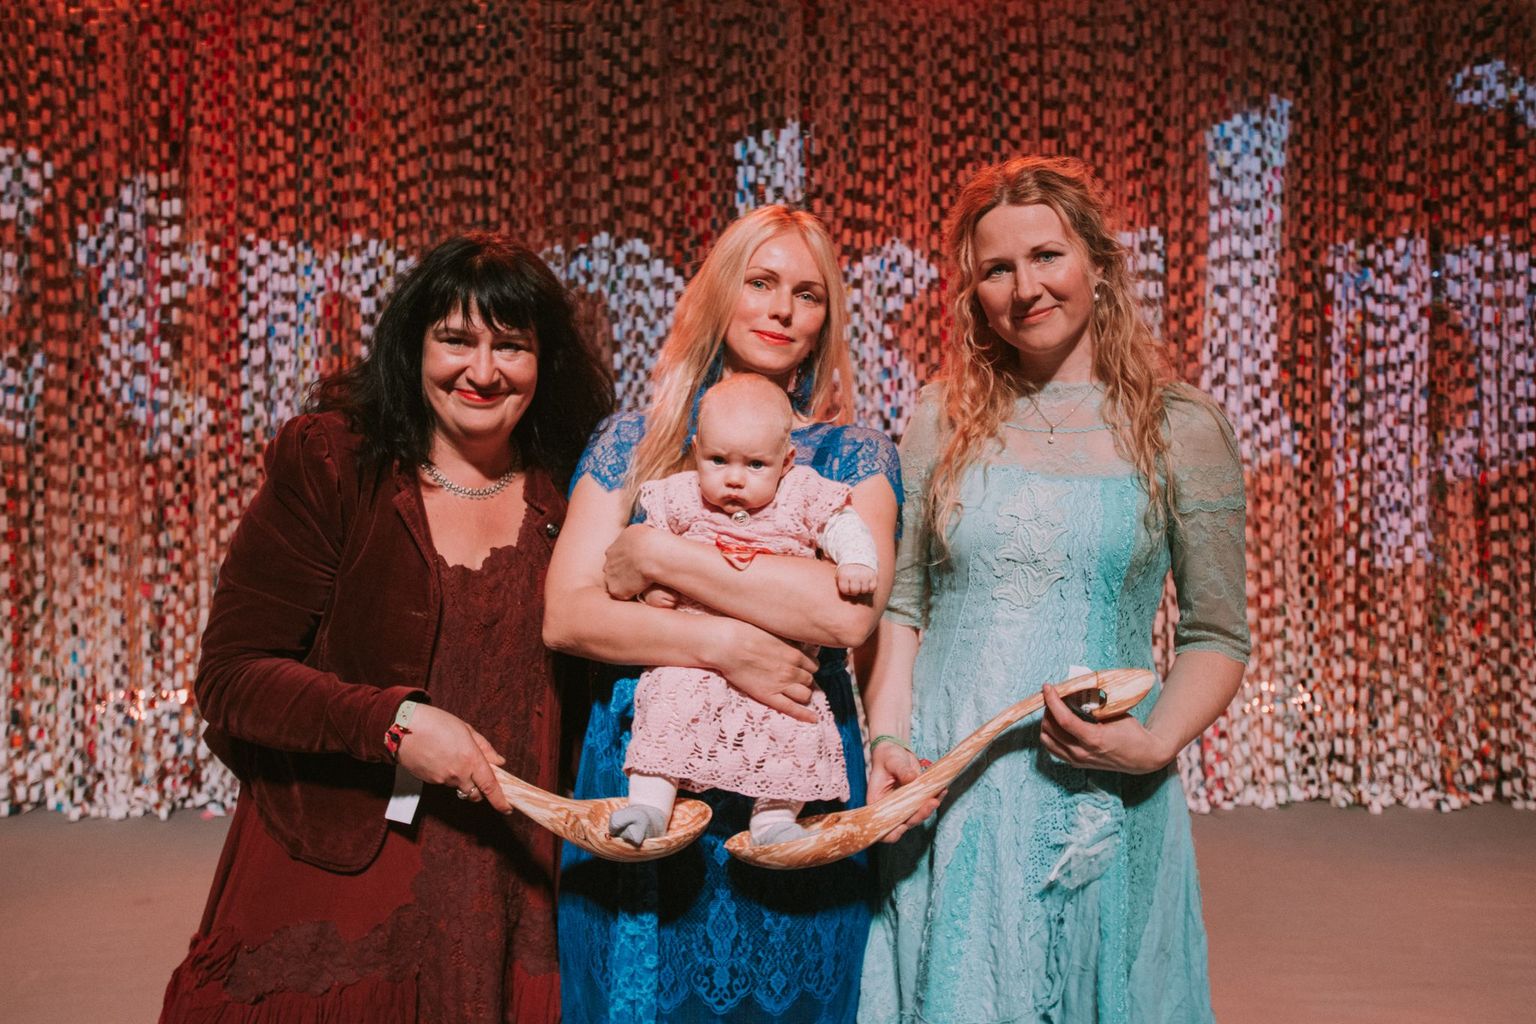 Naised Köögis liikmed Kairi Leivo, Kristiina Ehin tütrega ja Katrin laidre.